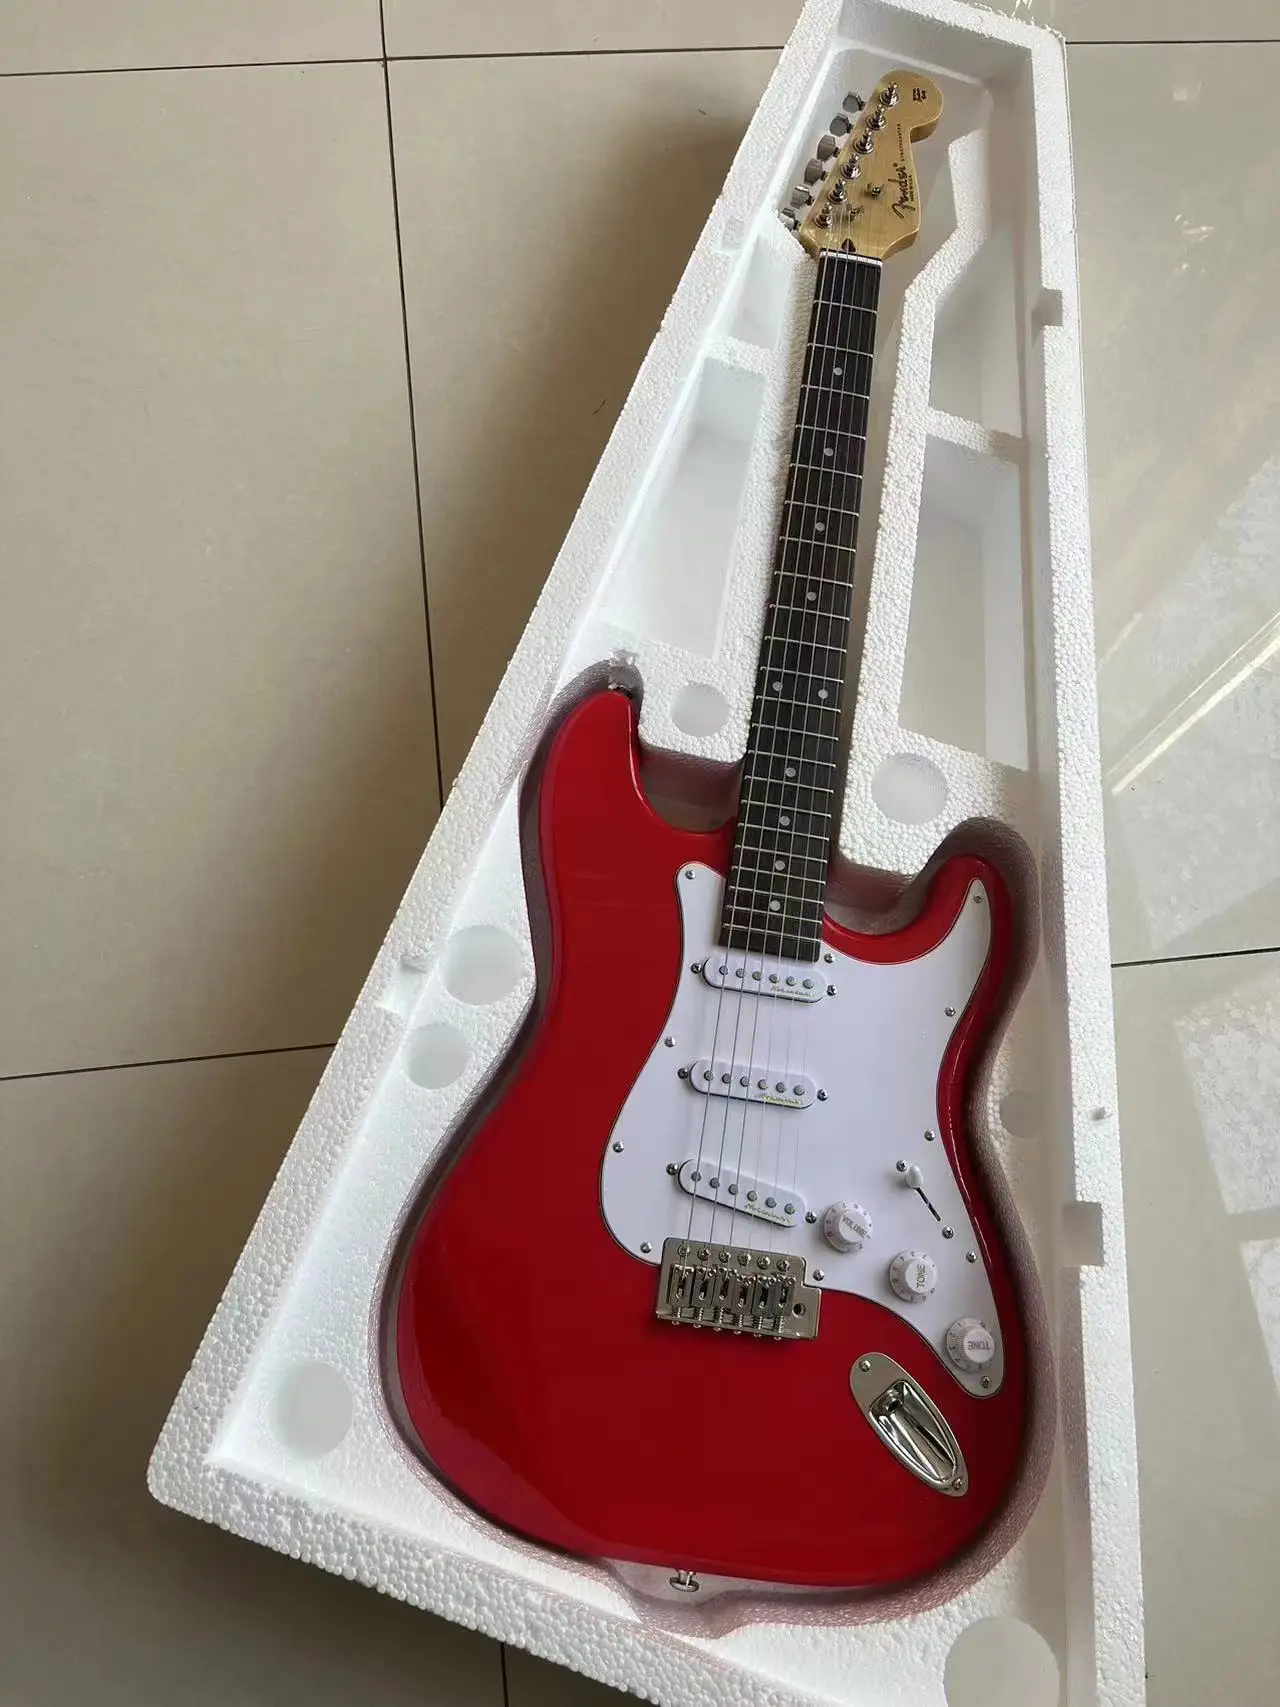 

Send in 3 days stratocaste-r custom body 6 string Red Electric Guitar in stock HGVJD